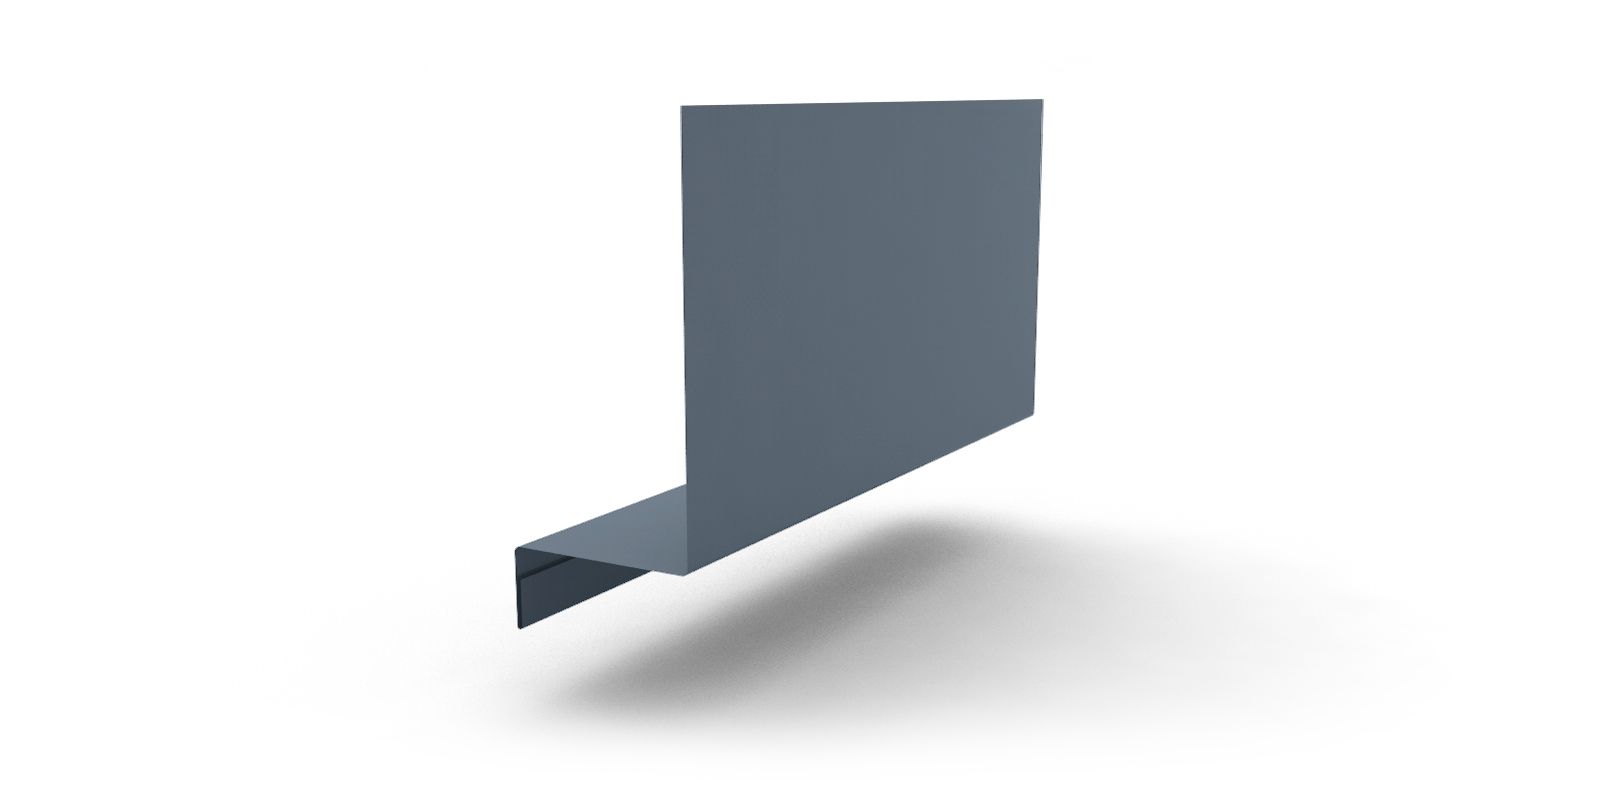 Планка примыкания боковая с покрытием PURMAN®, 0,5 мм, 2 м, изображение, фото | Сталь ТД